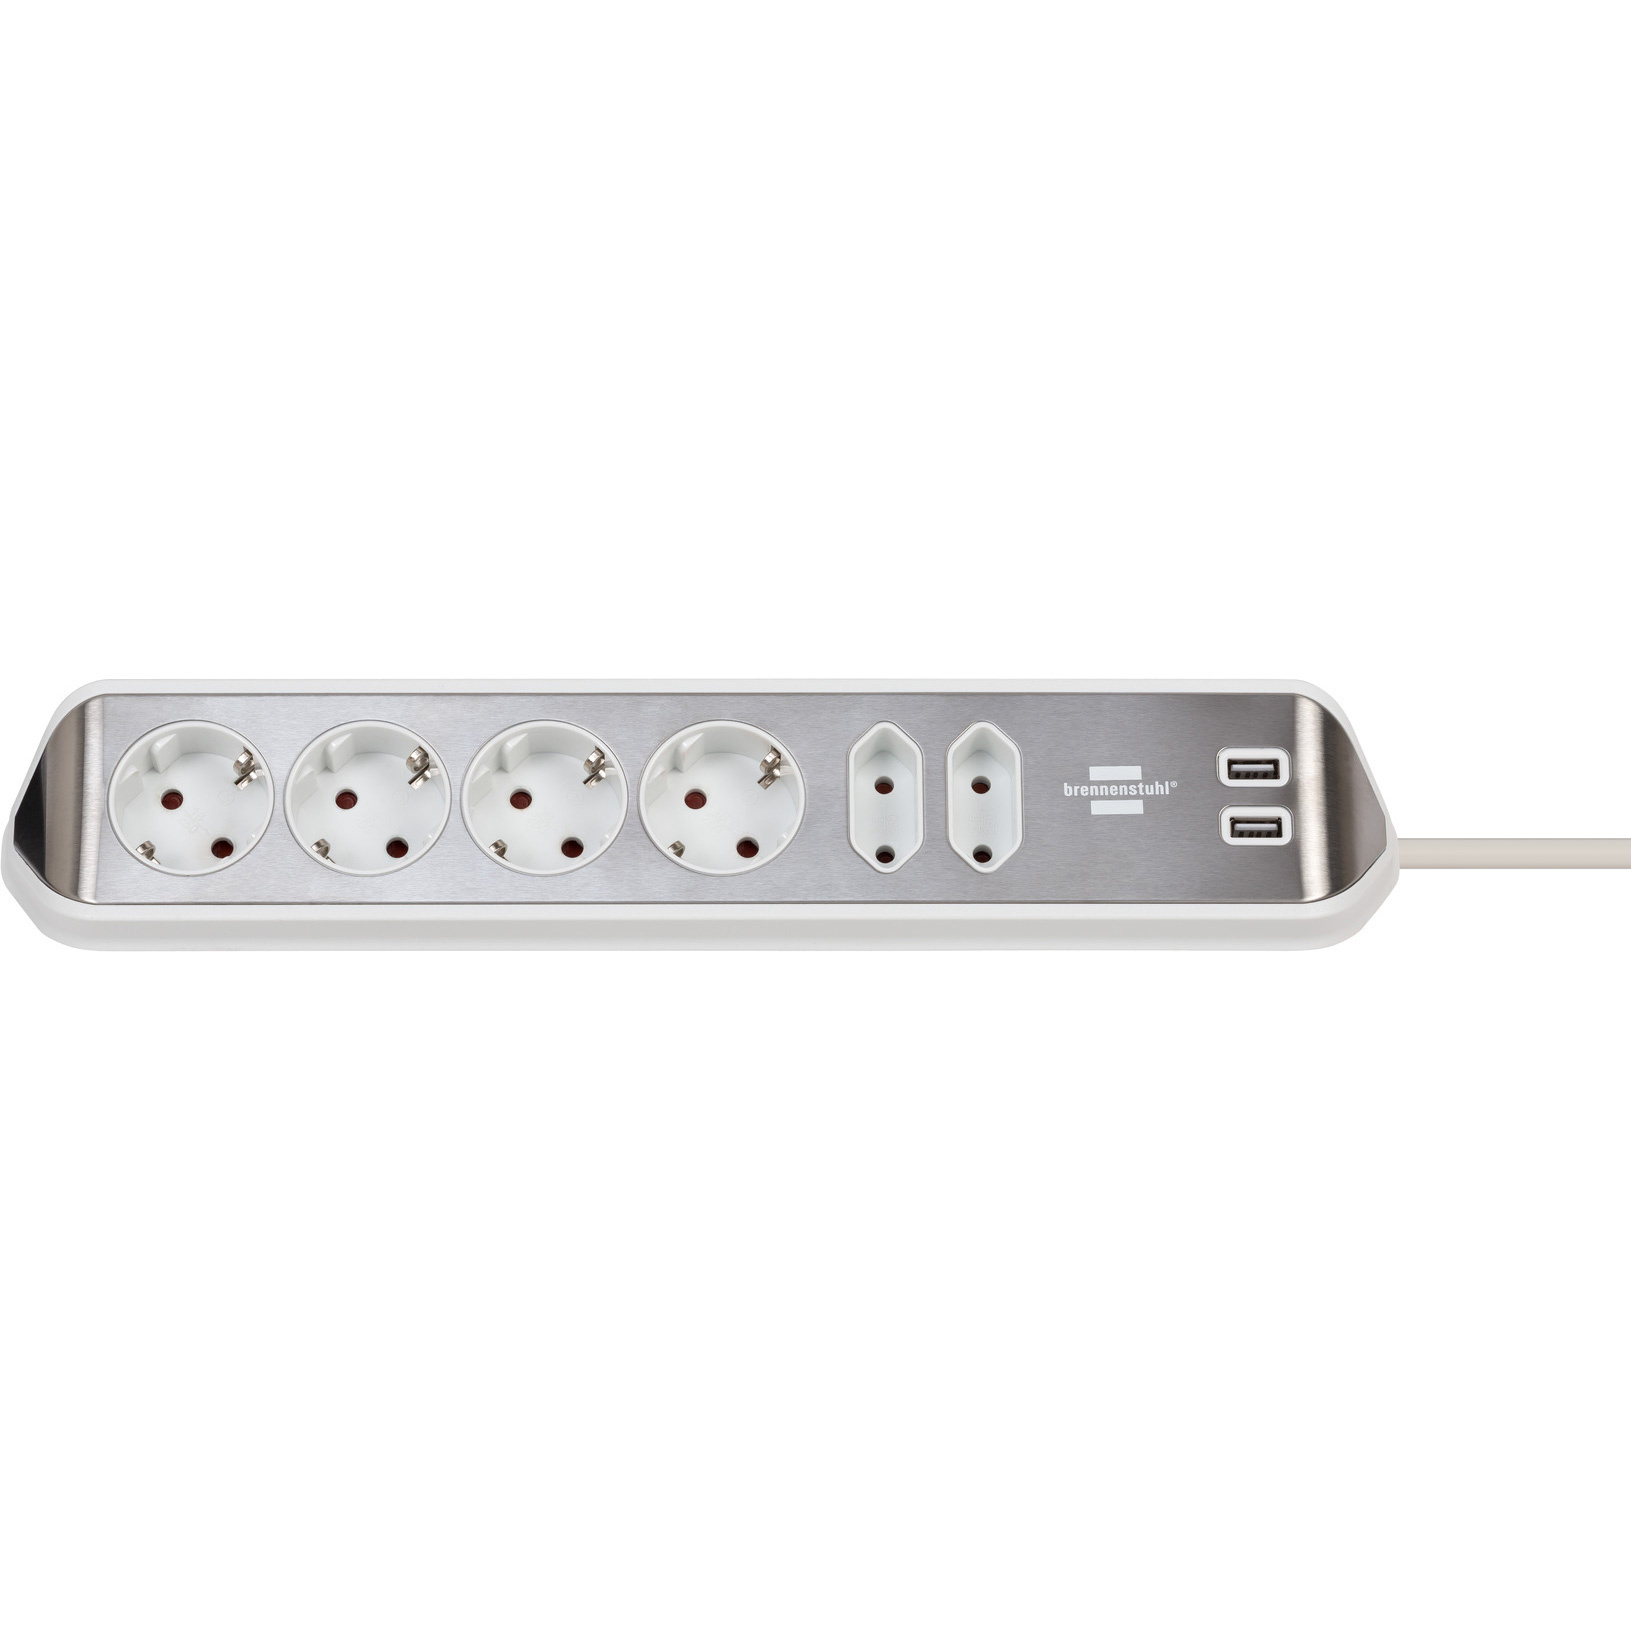 Brennenstuhl Estilo hoekstekkerdoos met USB oplaadpunten - RVS/wit